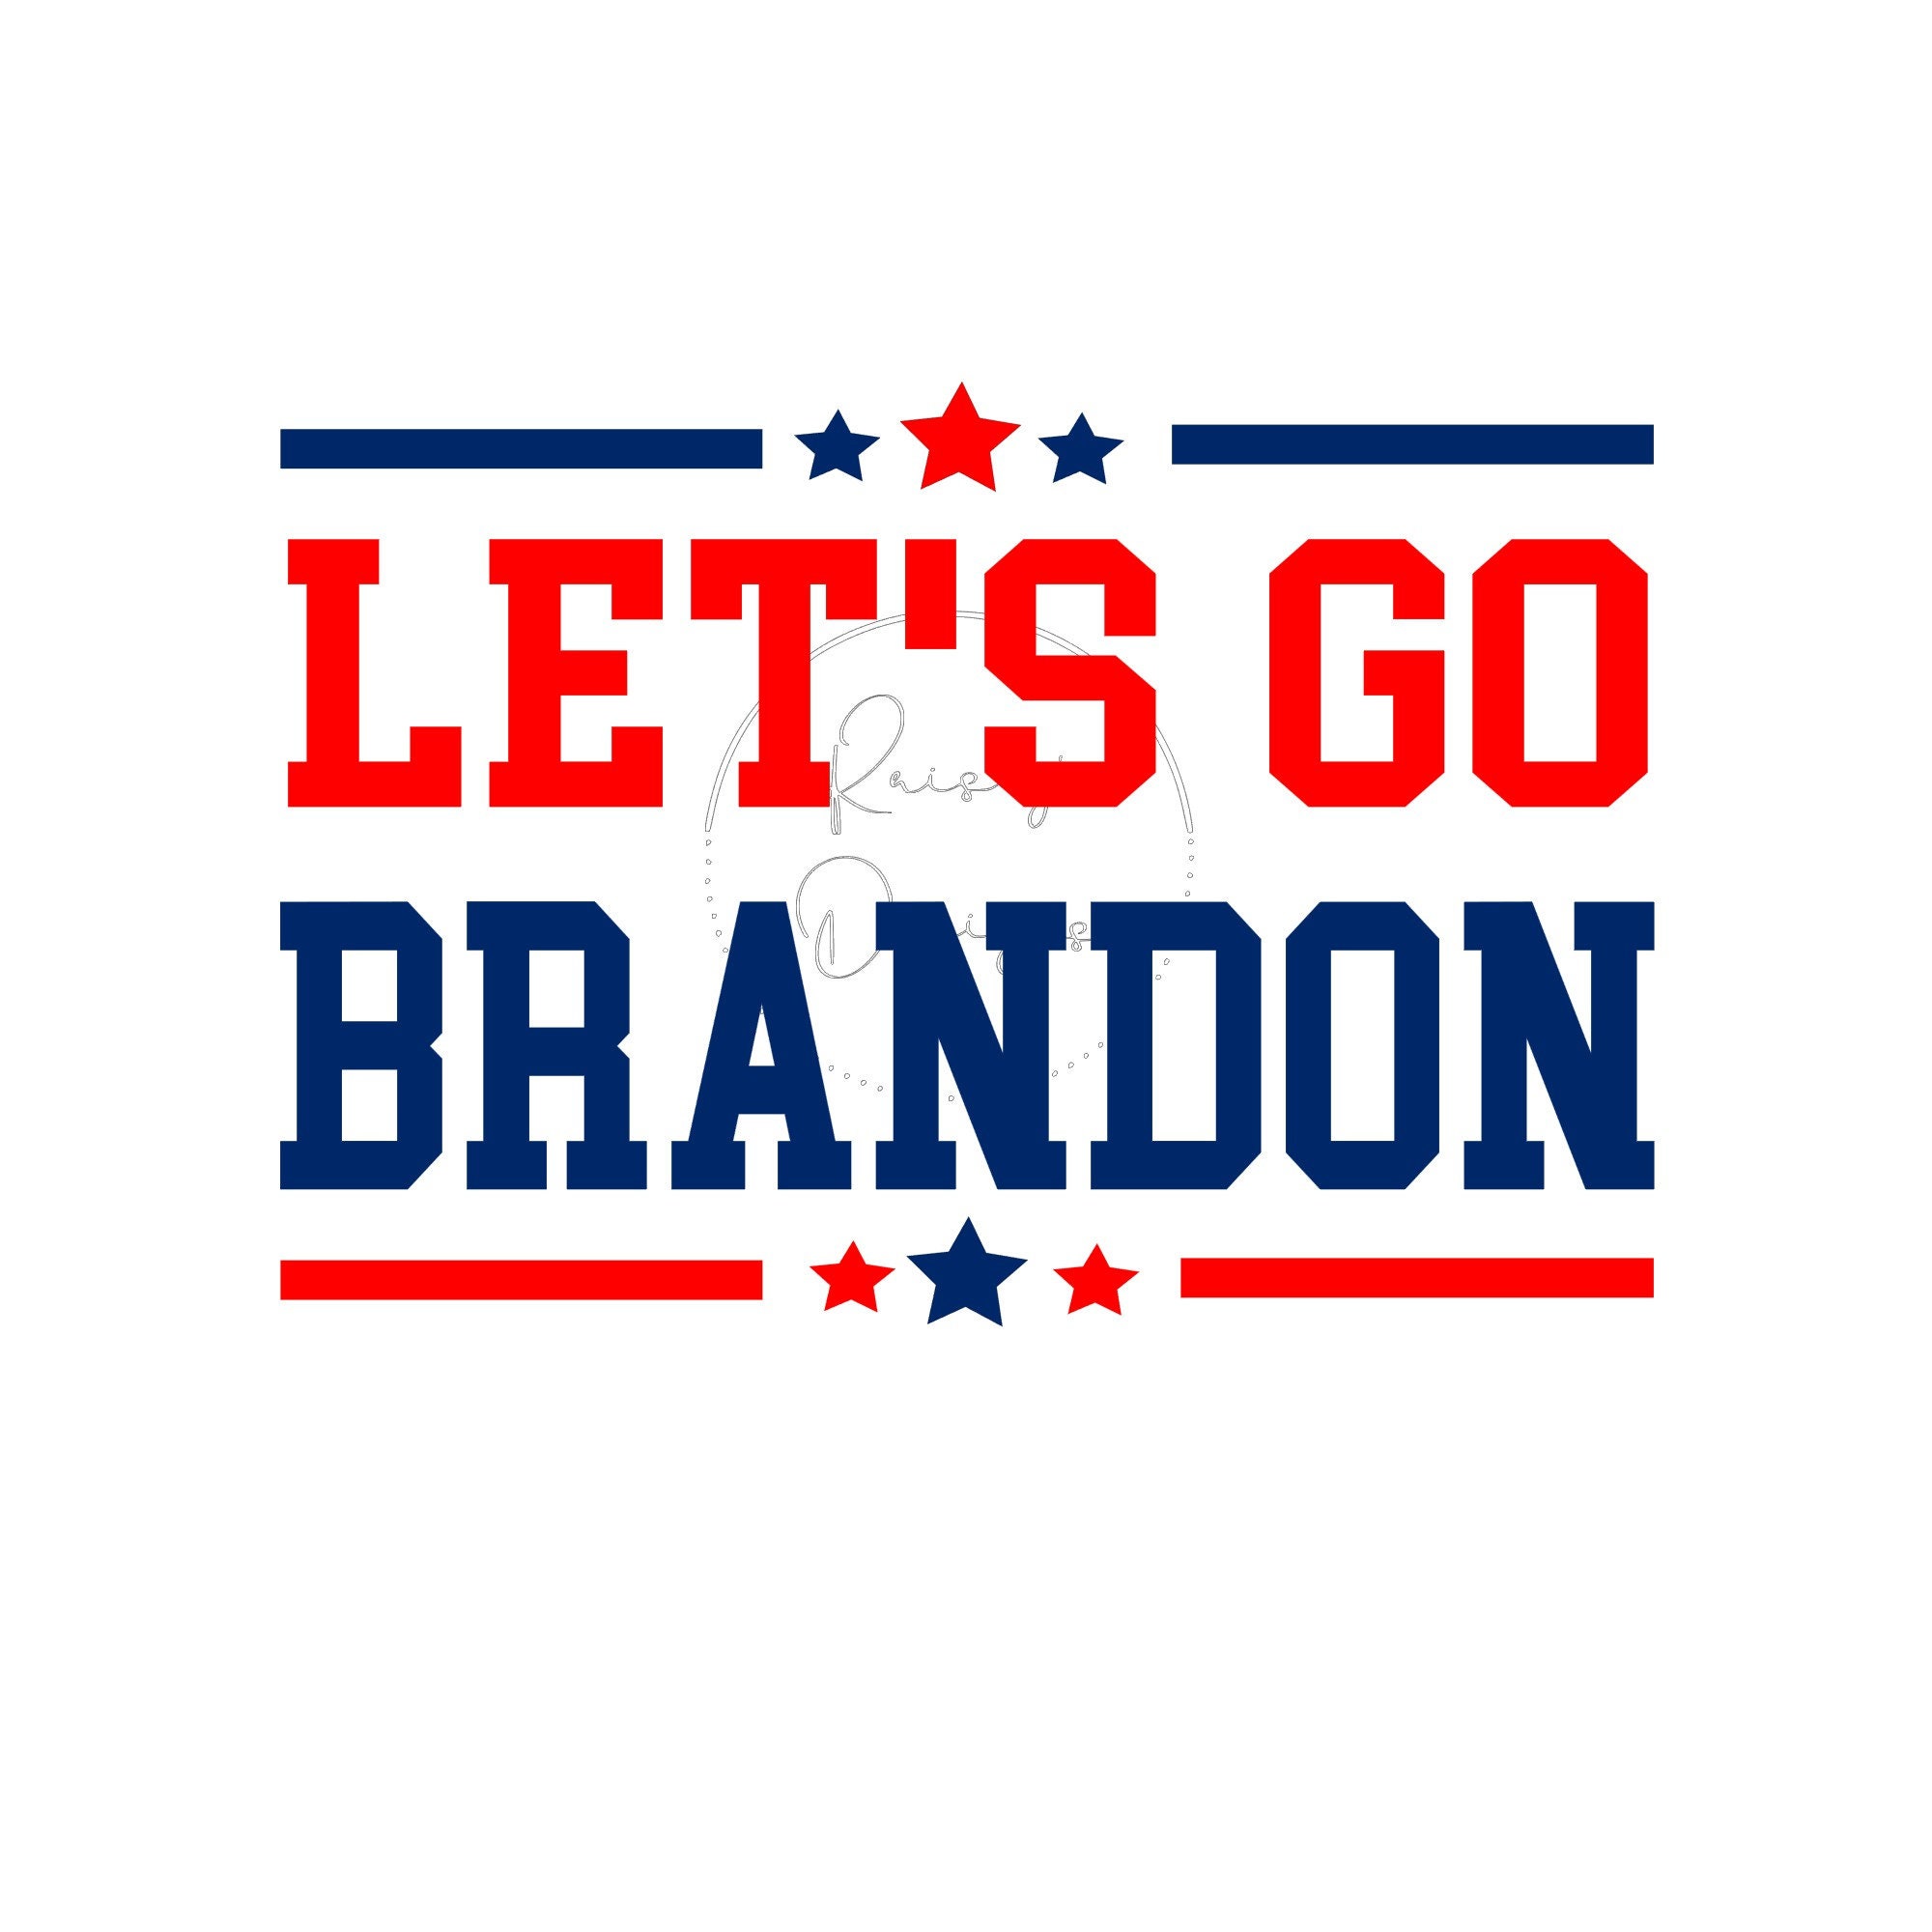 FJB Svg, Let's Go Brandon Svg Png, Trump Svg Png, Conservative